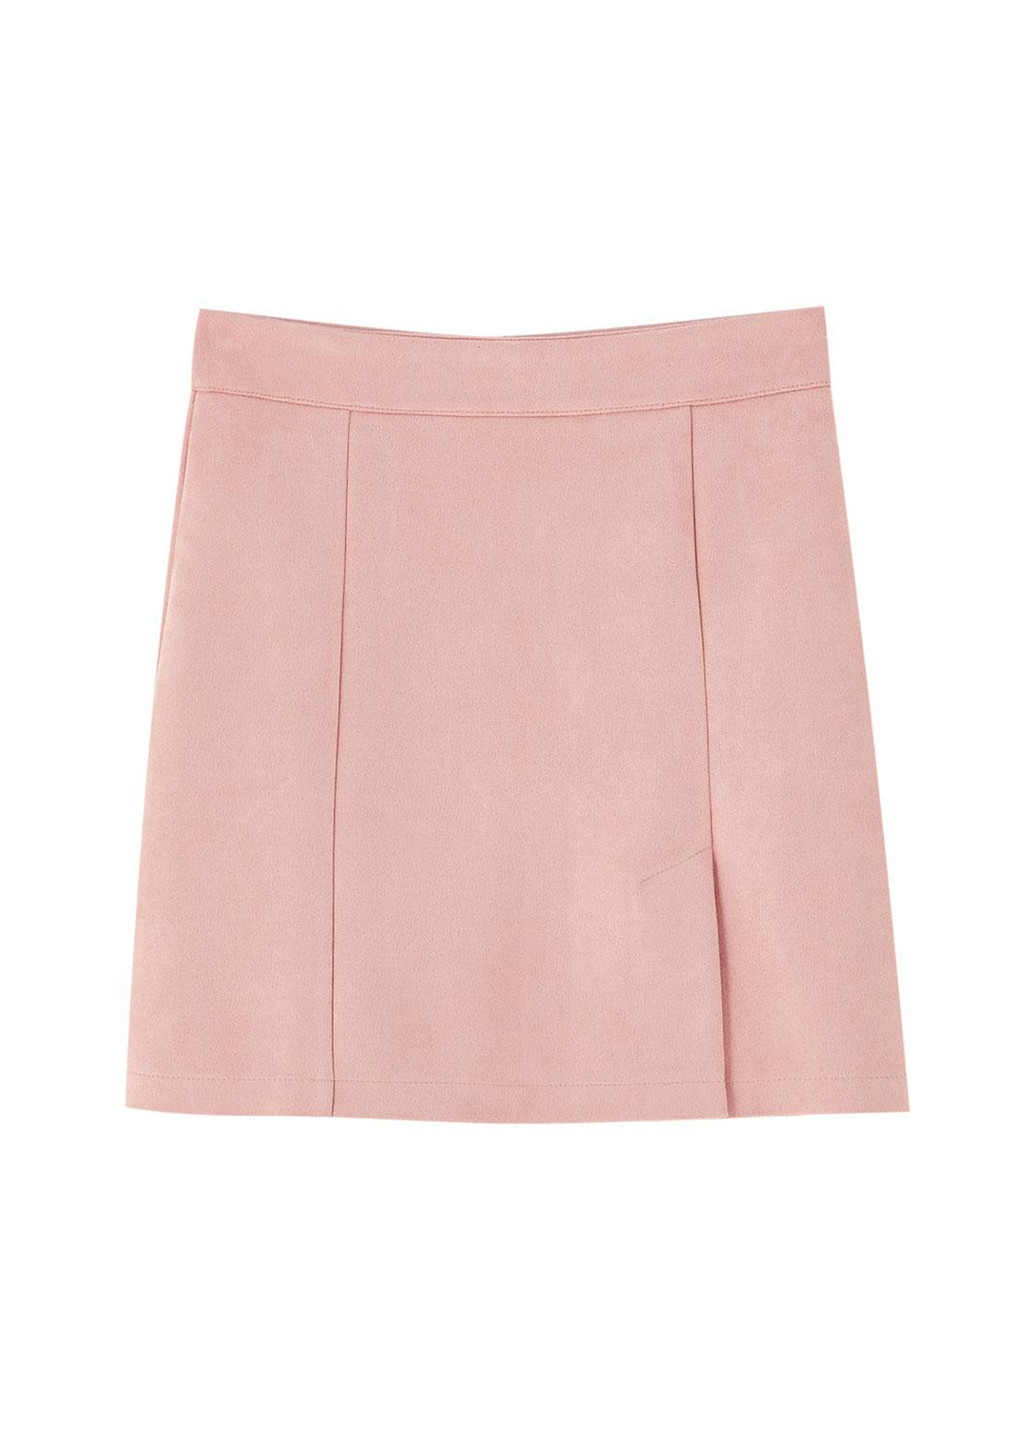 Светло-розовая кэжуал однотонная юбка Pull & Bear а-силуэта (трапеция)